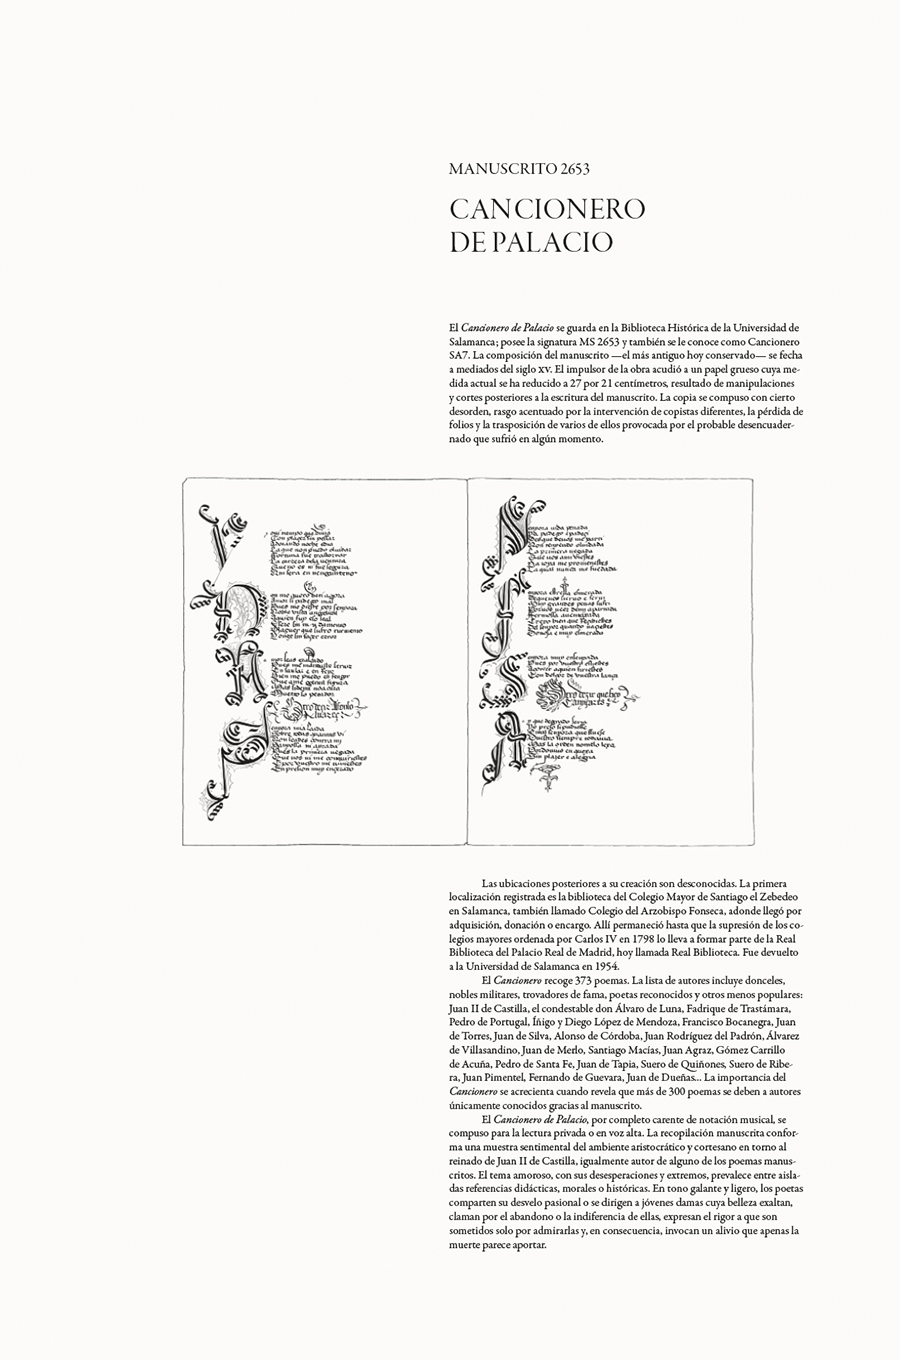 Codex in Aula. Coloreado a mano. Cancionero de Palacio